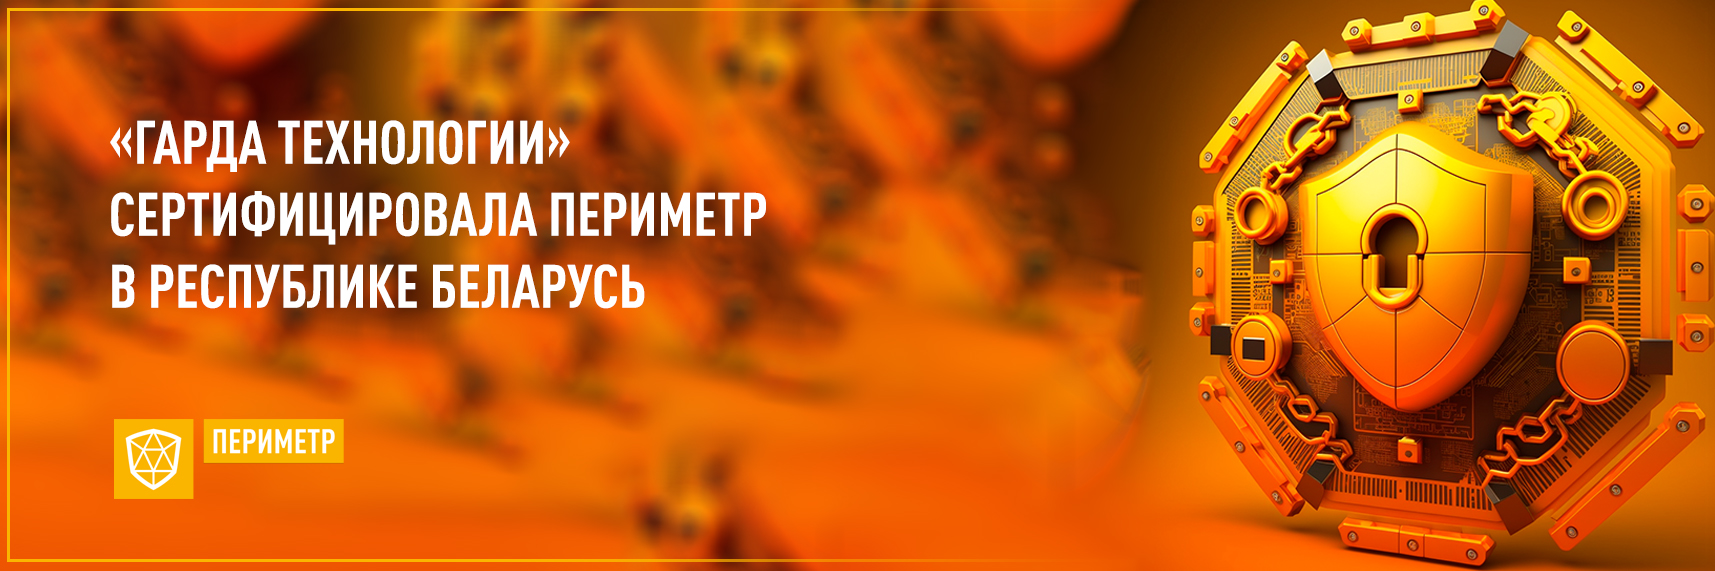 «Гарда Технологии» сертифицировала Периметр в Республике Беларусь 